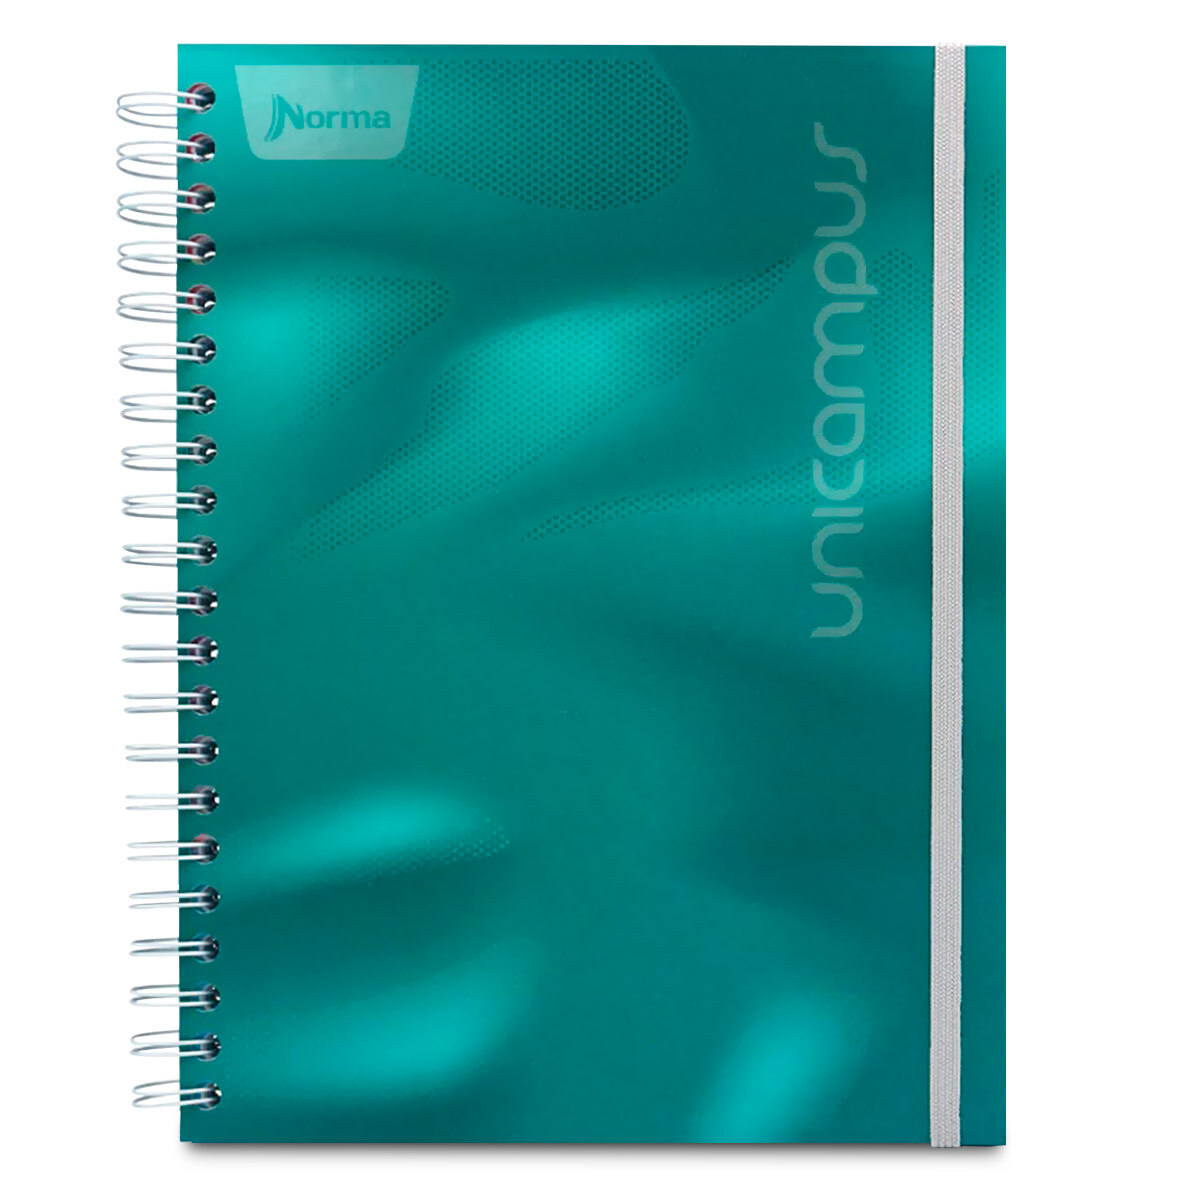 Cuaderno Profesional Norma Unicampus Cuadro Grande 160 hojas